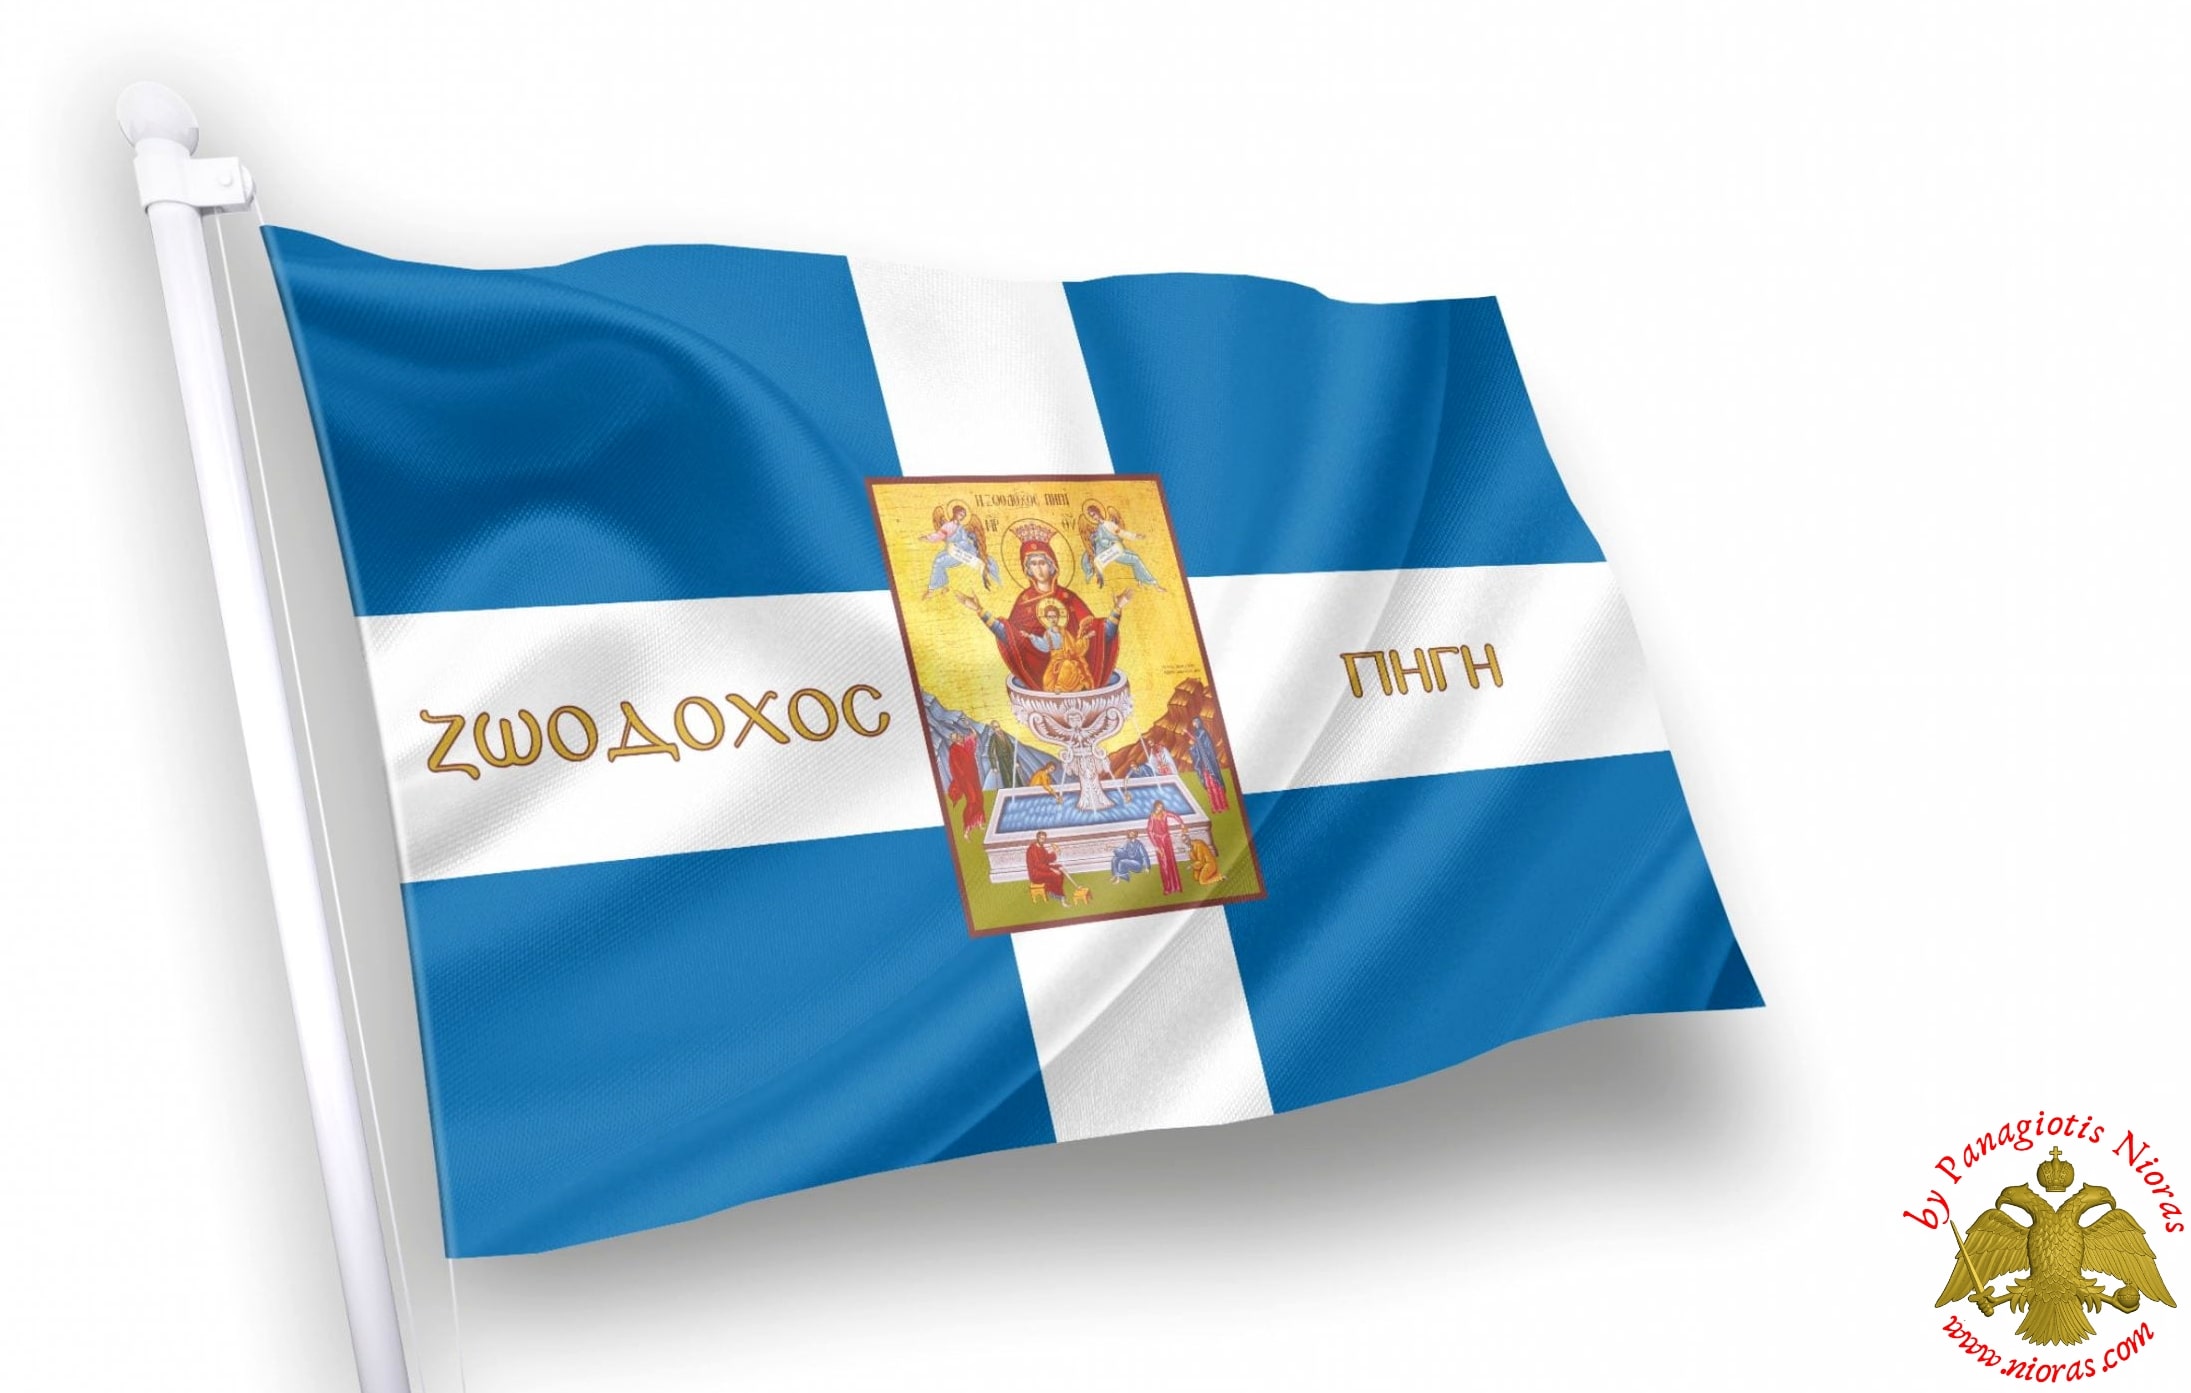 Ζωοδόχος Πηγή Ορθόδοξη Ελληνικη Σημαία